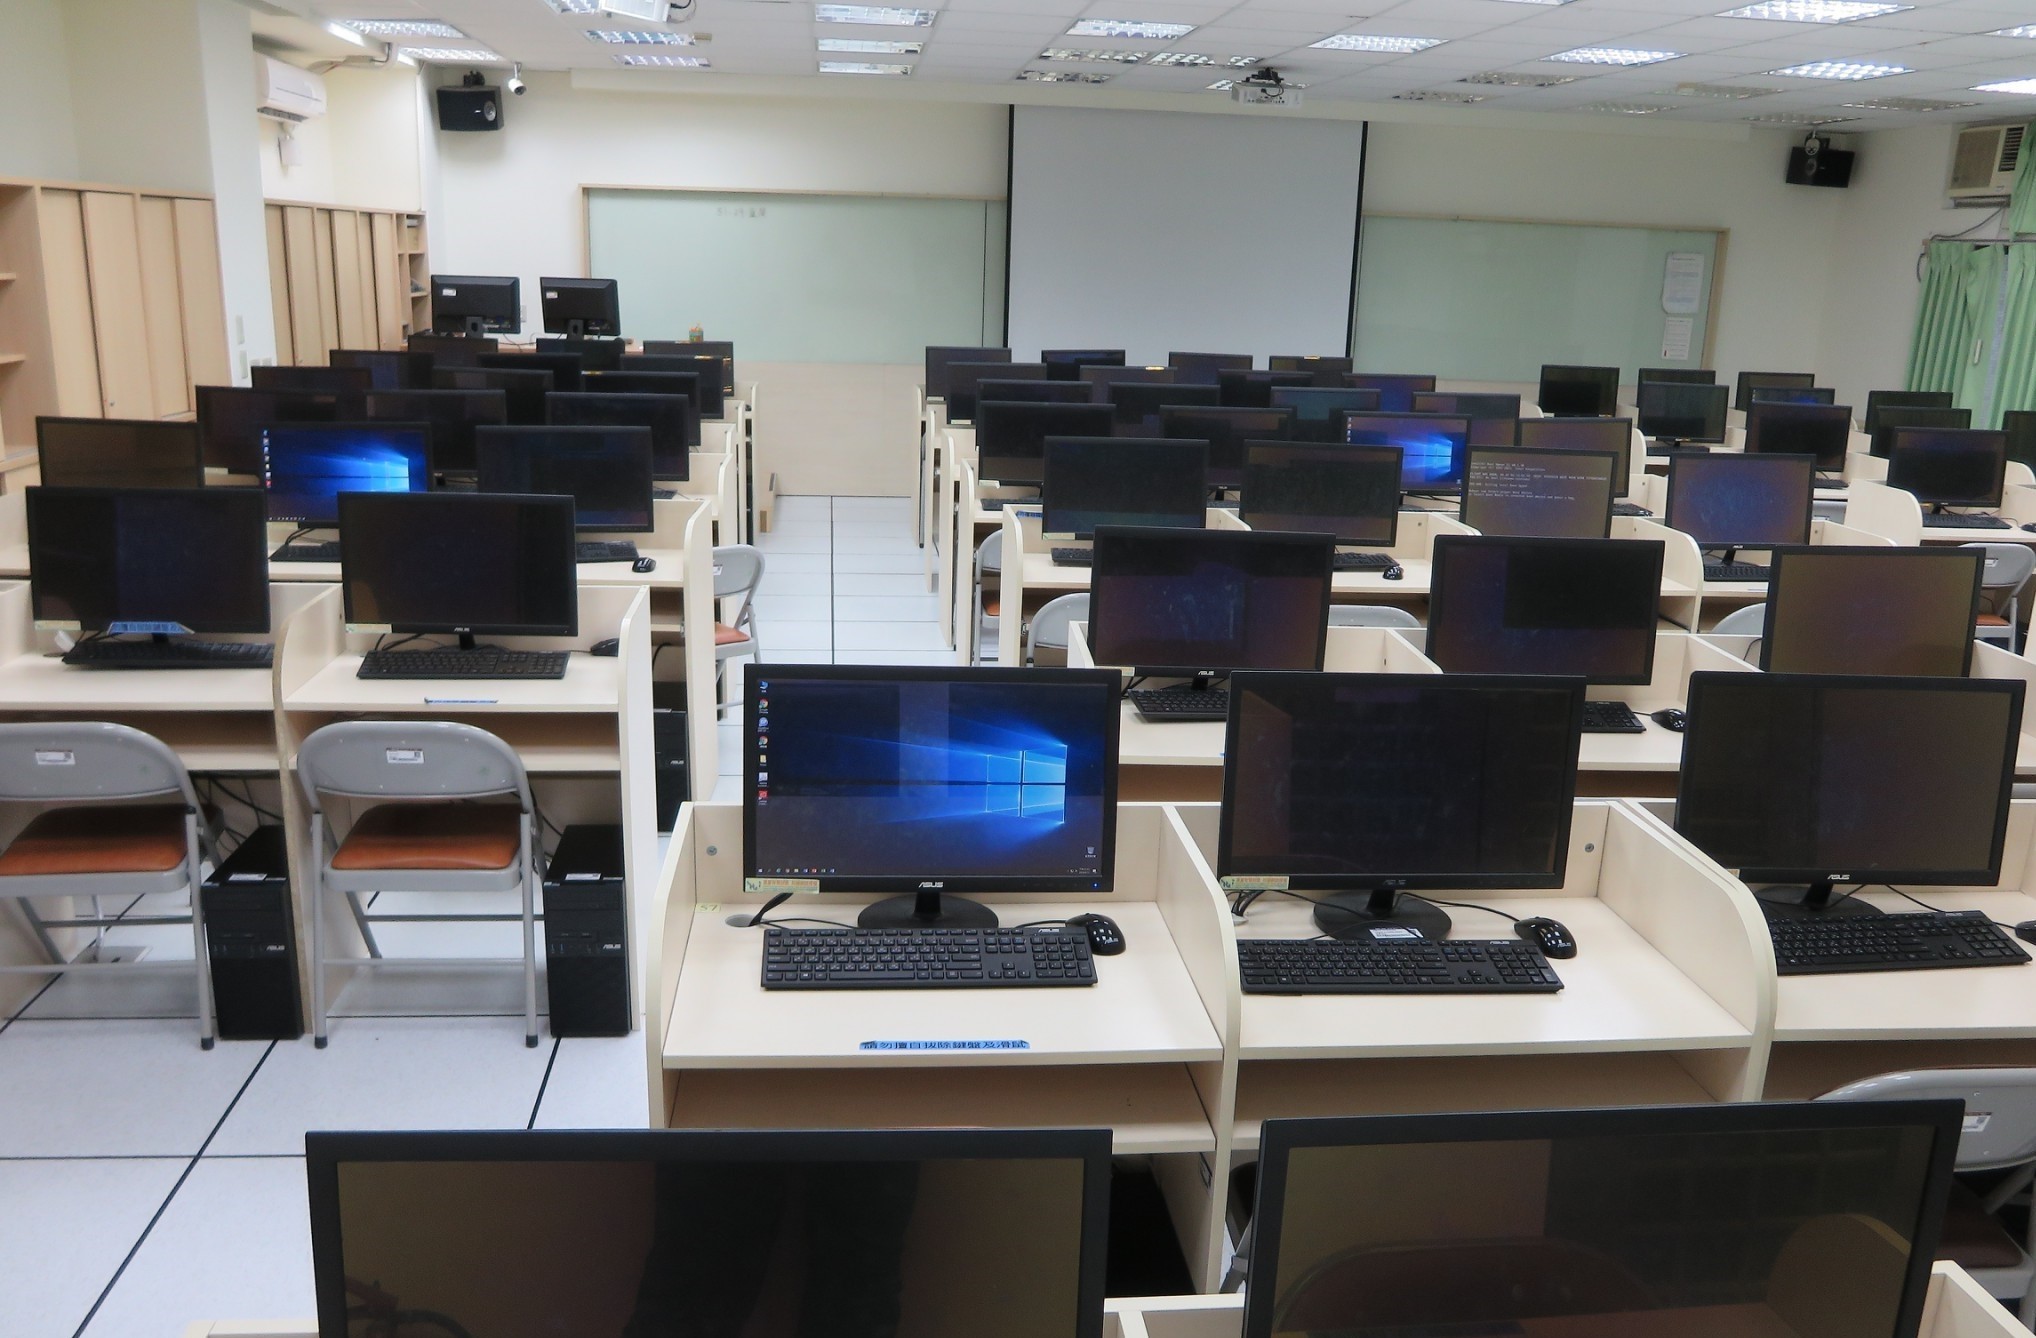 K502-1國際商務應用教室教室實景(電腦教室)